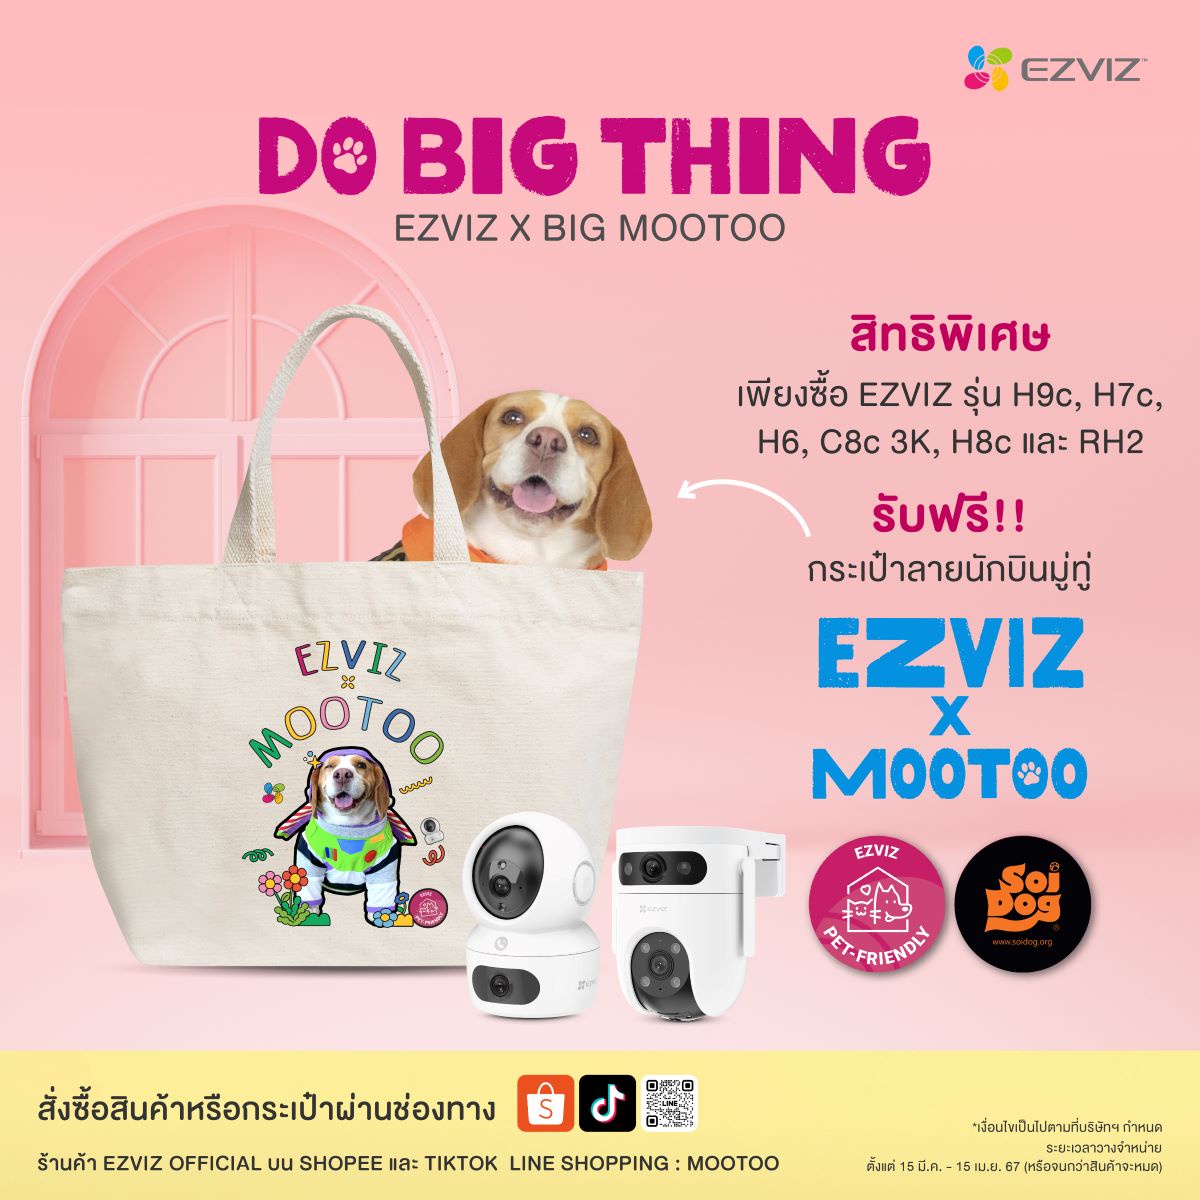 อีซี่วิซชวนลูกค้าร่วมส่งต่อความสุข สู่น้องหมาไร้บ้าน จับมือ Pet Influencer Big MooToo จัดแคมเปญ Do Big Thing จำหน่ายสินค้าเอ็กซ์คลูซีฟอิดิชั่น นำรายได้ช่วยเหลือมูลนิธิเพื่อสุนัขในซอย